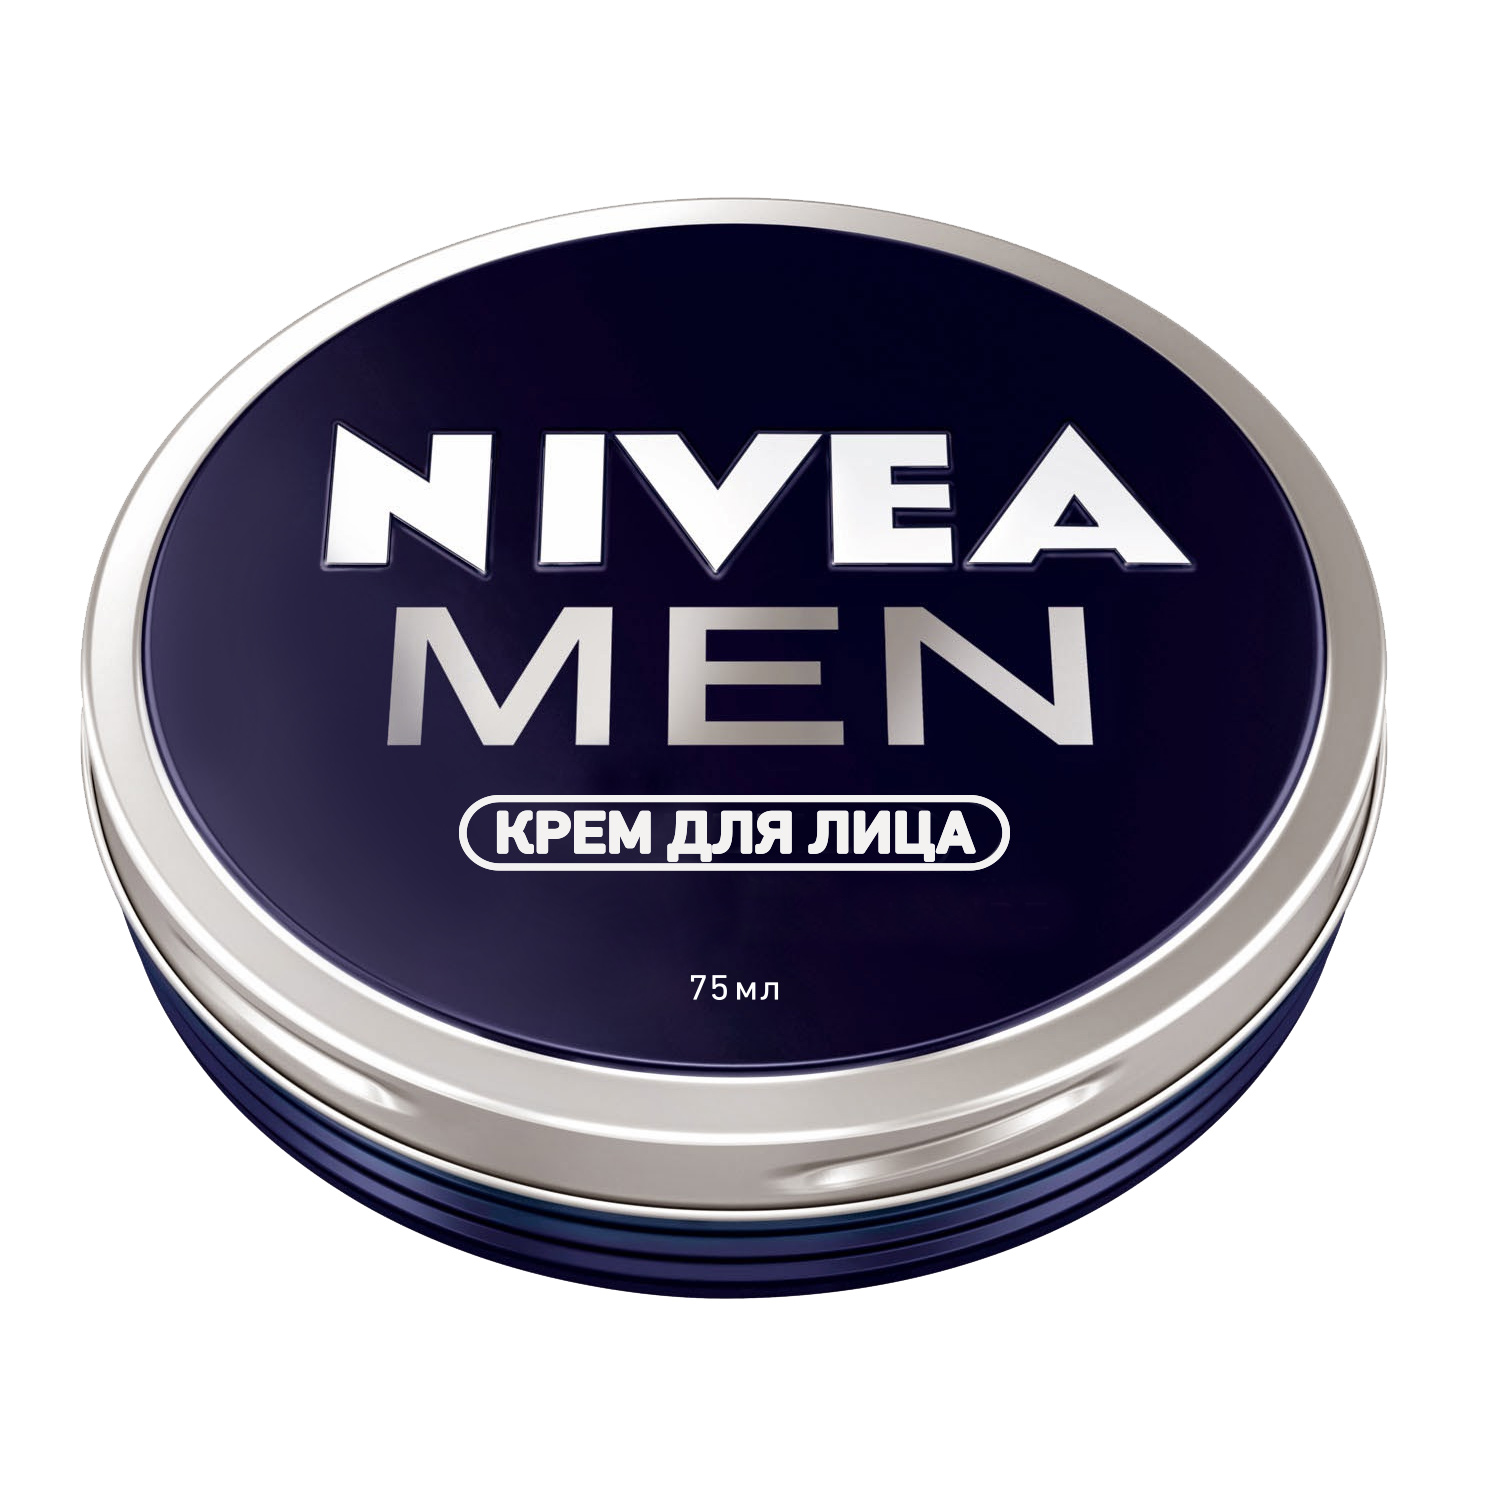 Крем для лица серии Nivea Men 75 мл Nivea крем для лица farmstay увлажняющий выравнивающий тон кожи с семенами зеленого чая 100г